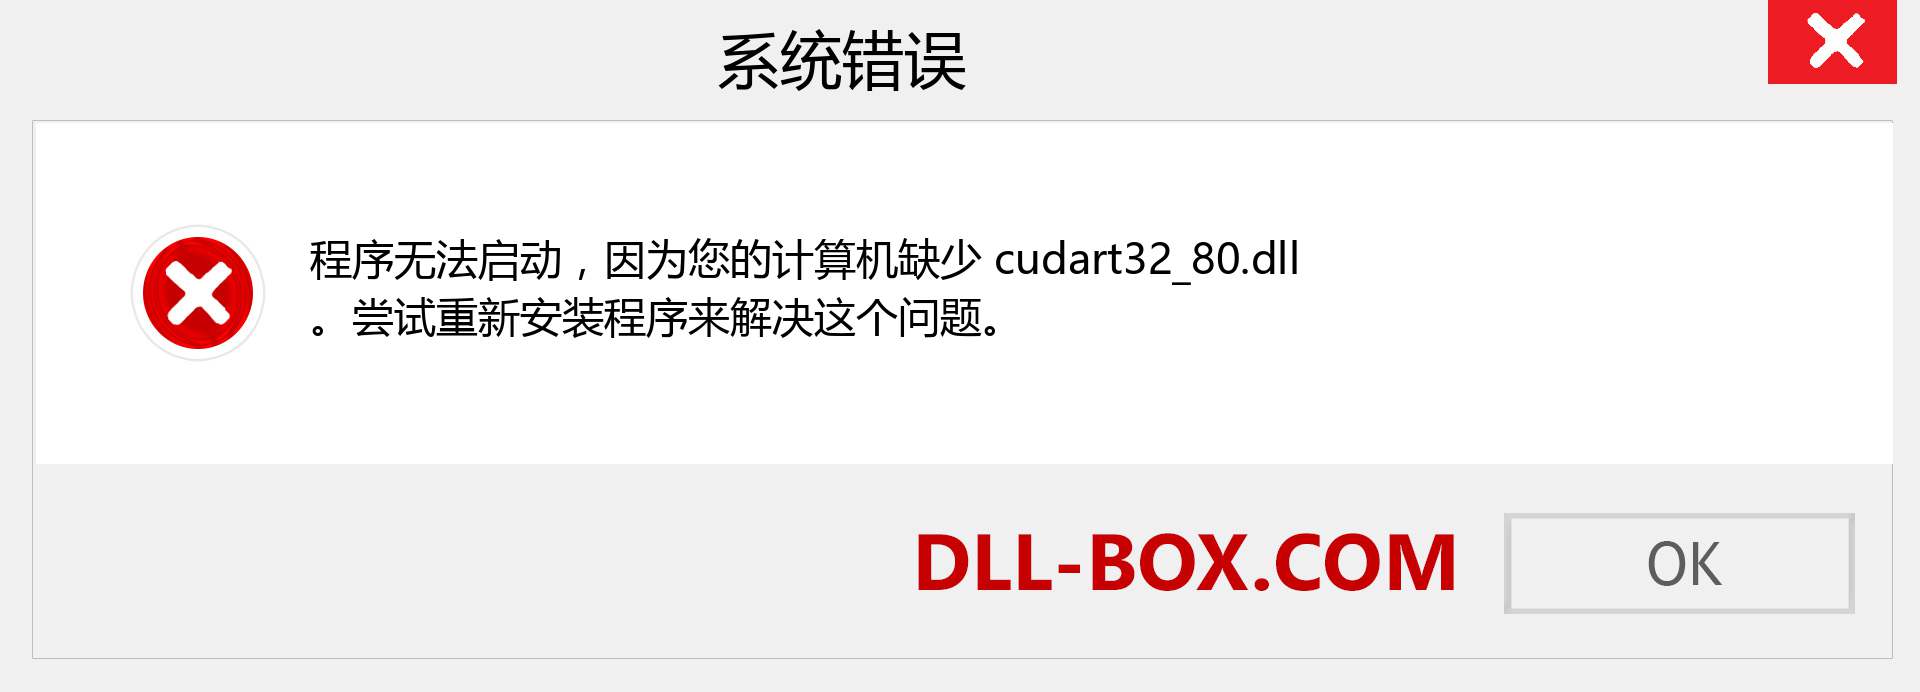 cudart32_80.dll 文件丢失？。 适用于 Windows 7、8、10 的下载 - 修复 Windows、照片、图像上的 cudart32_80 dll 丢失错误